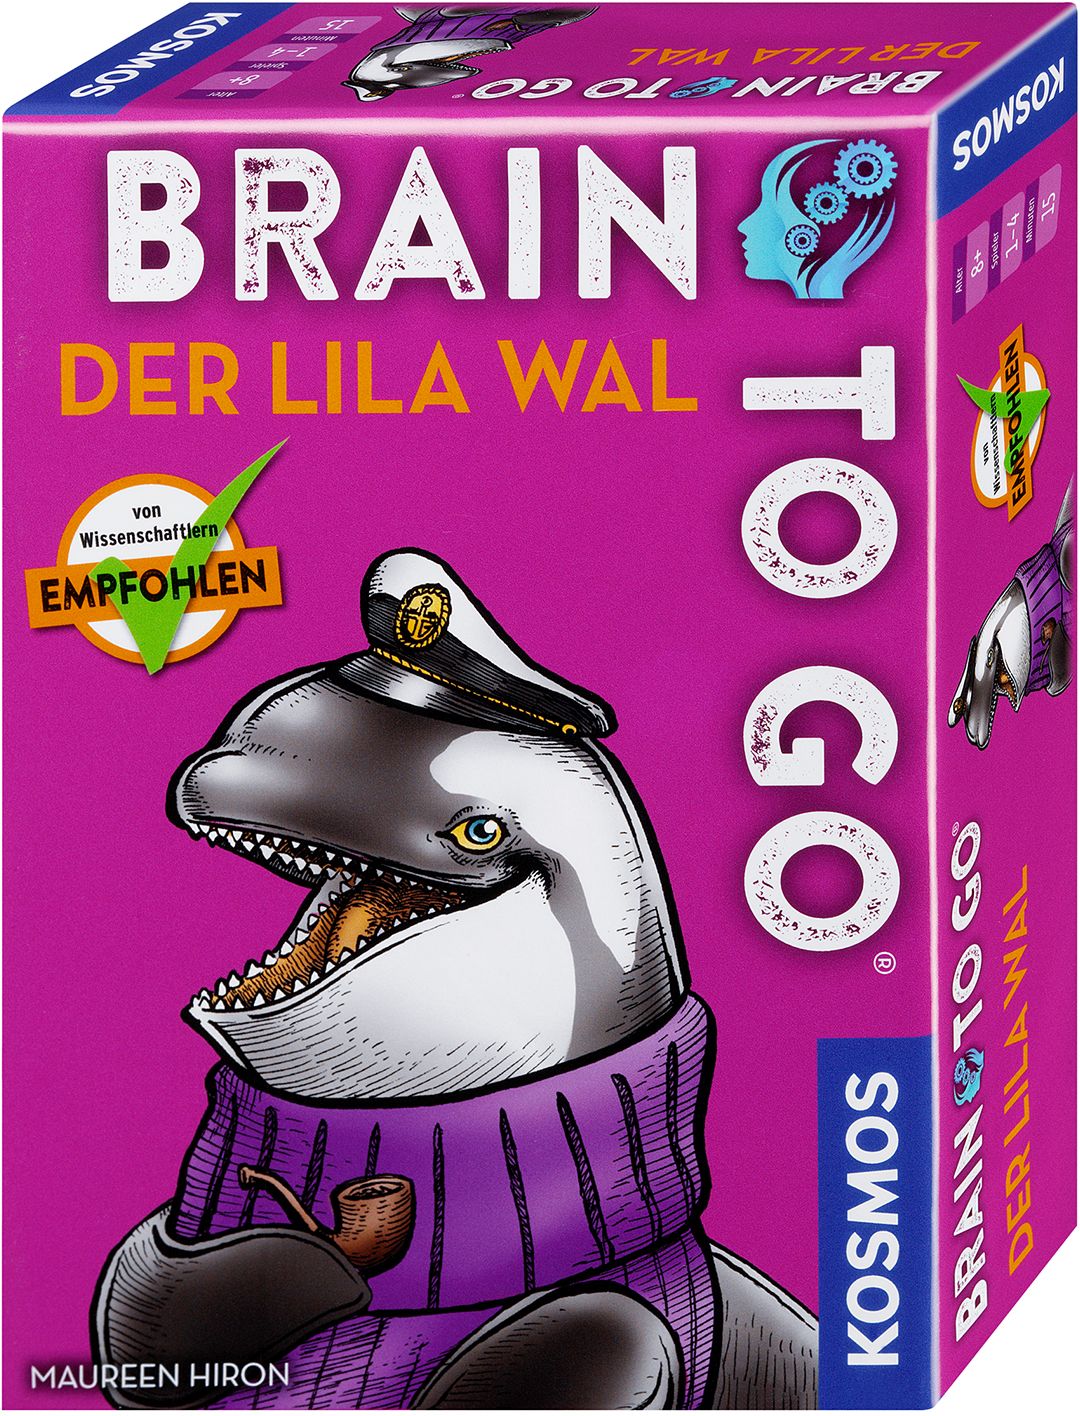 Brain to go - Der lila Wal von Kosmos Verlags-GmbH & Co